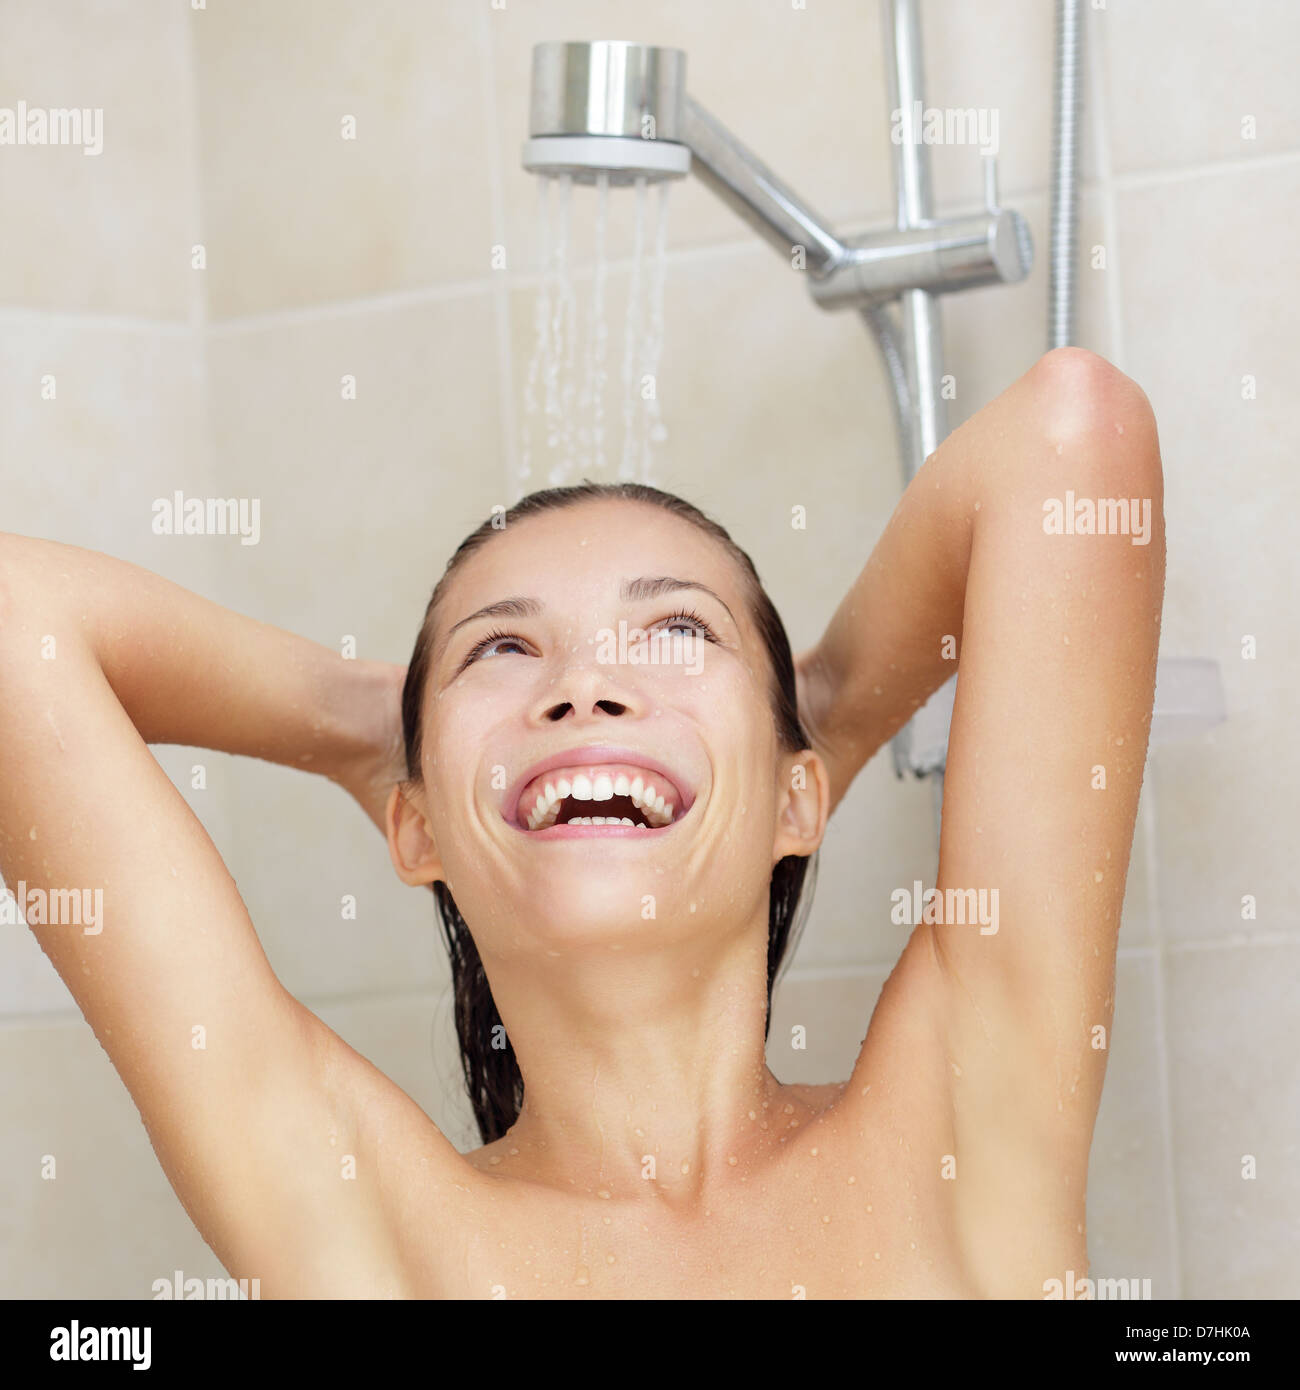 Douche woman smiling professionnels bénéficiant de la douche de l'eau et  laver les cheveux d'une joyeuse et de félicité d'expression. Photo de mode  de vie des jeunes en tant que race mixte